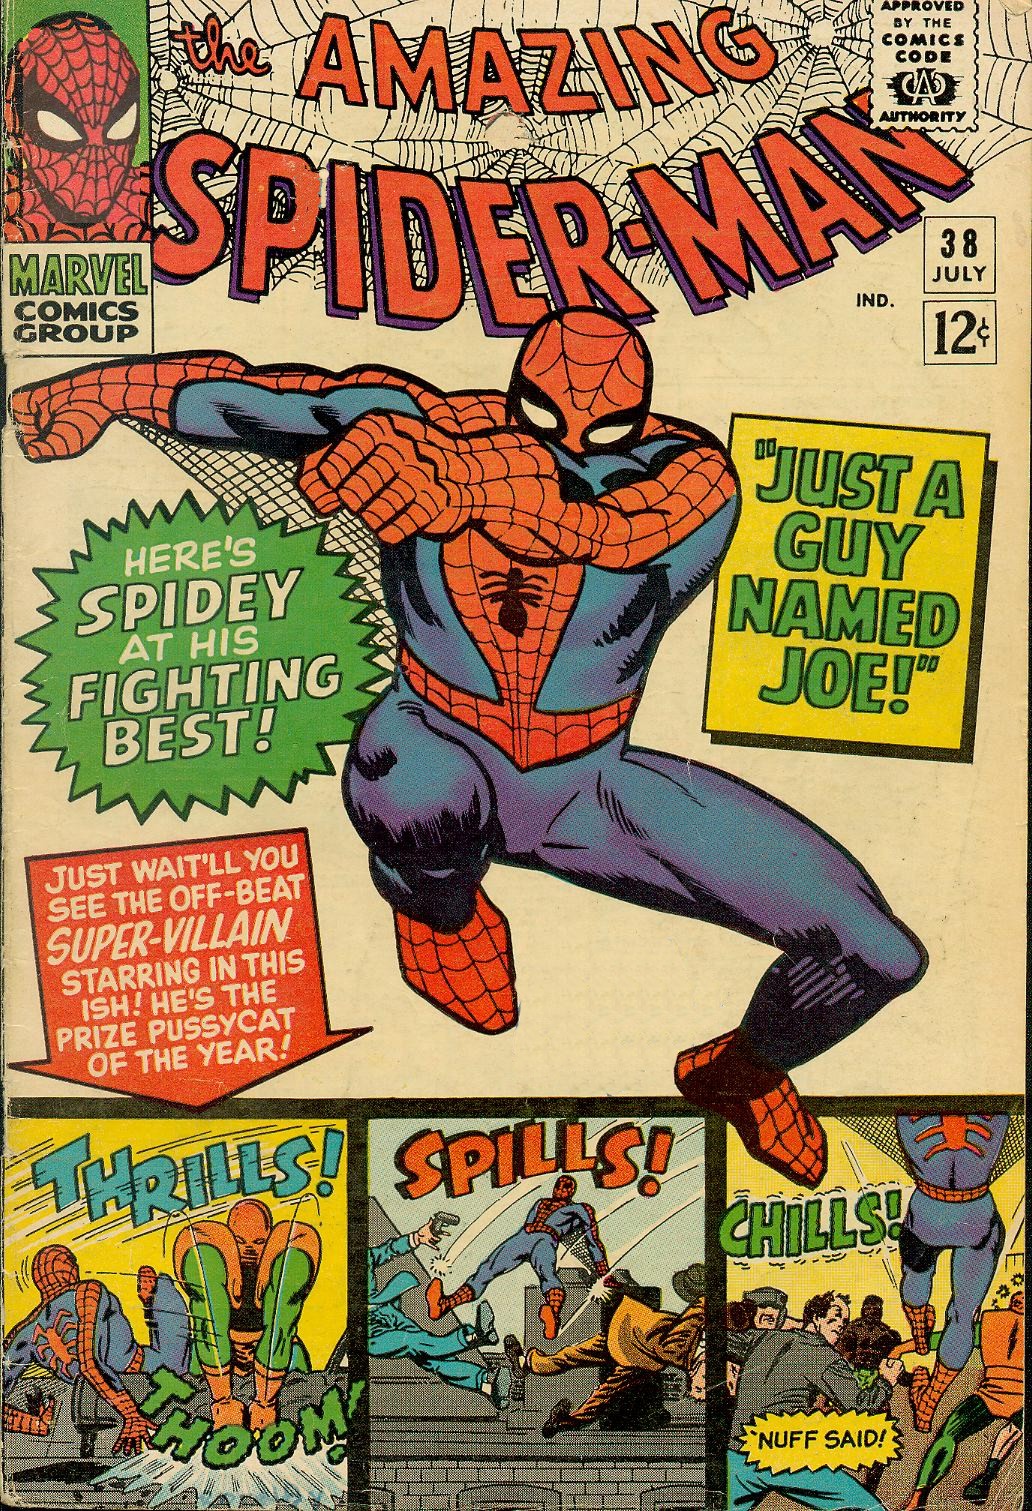 Amazing Spider-Man Vol. 1 #38